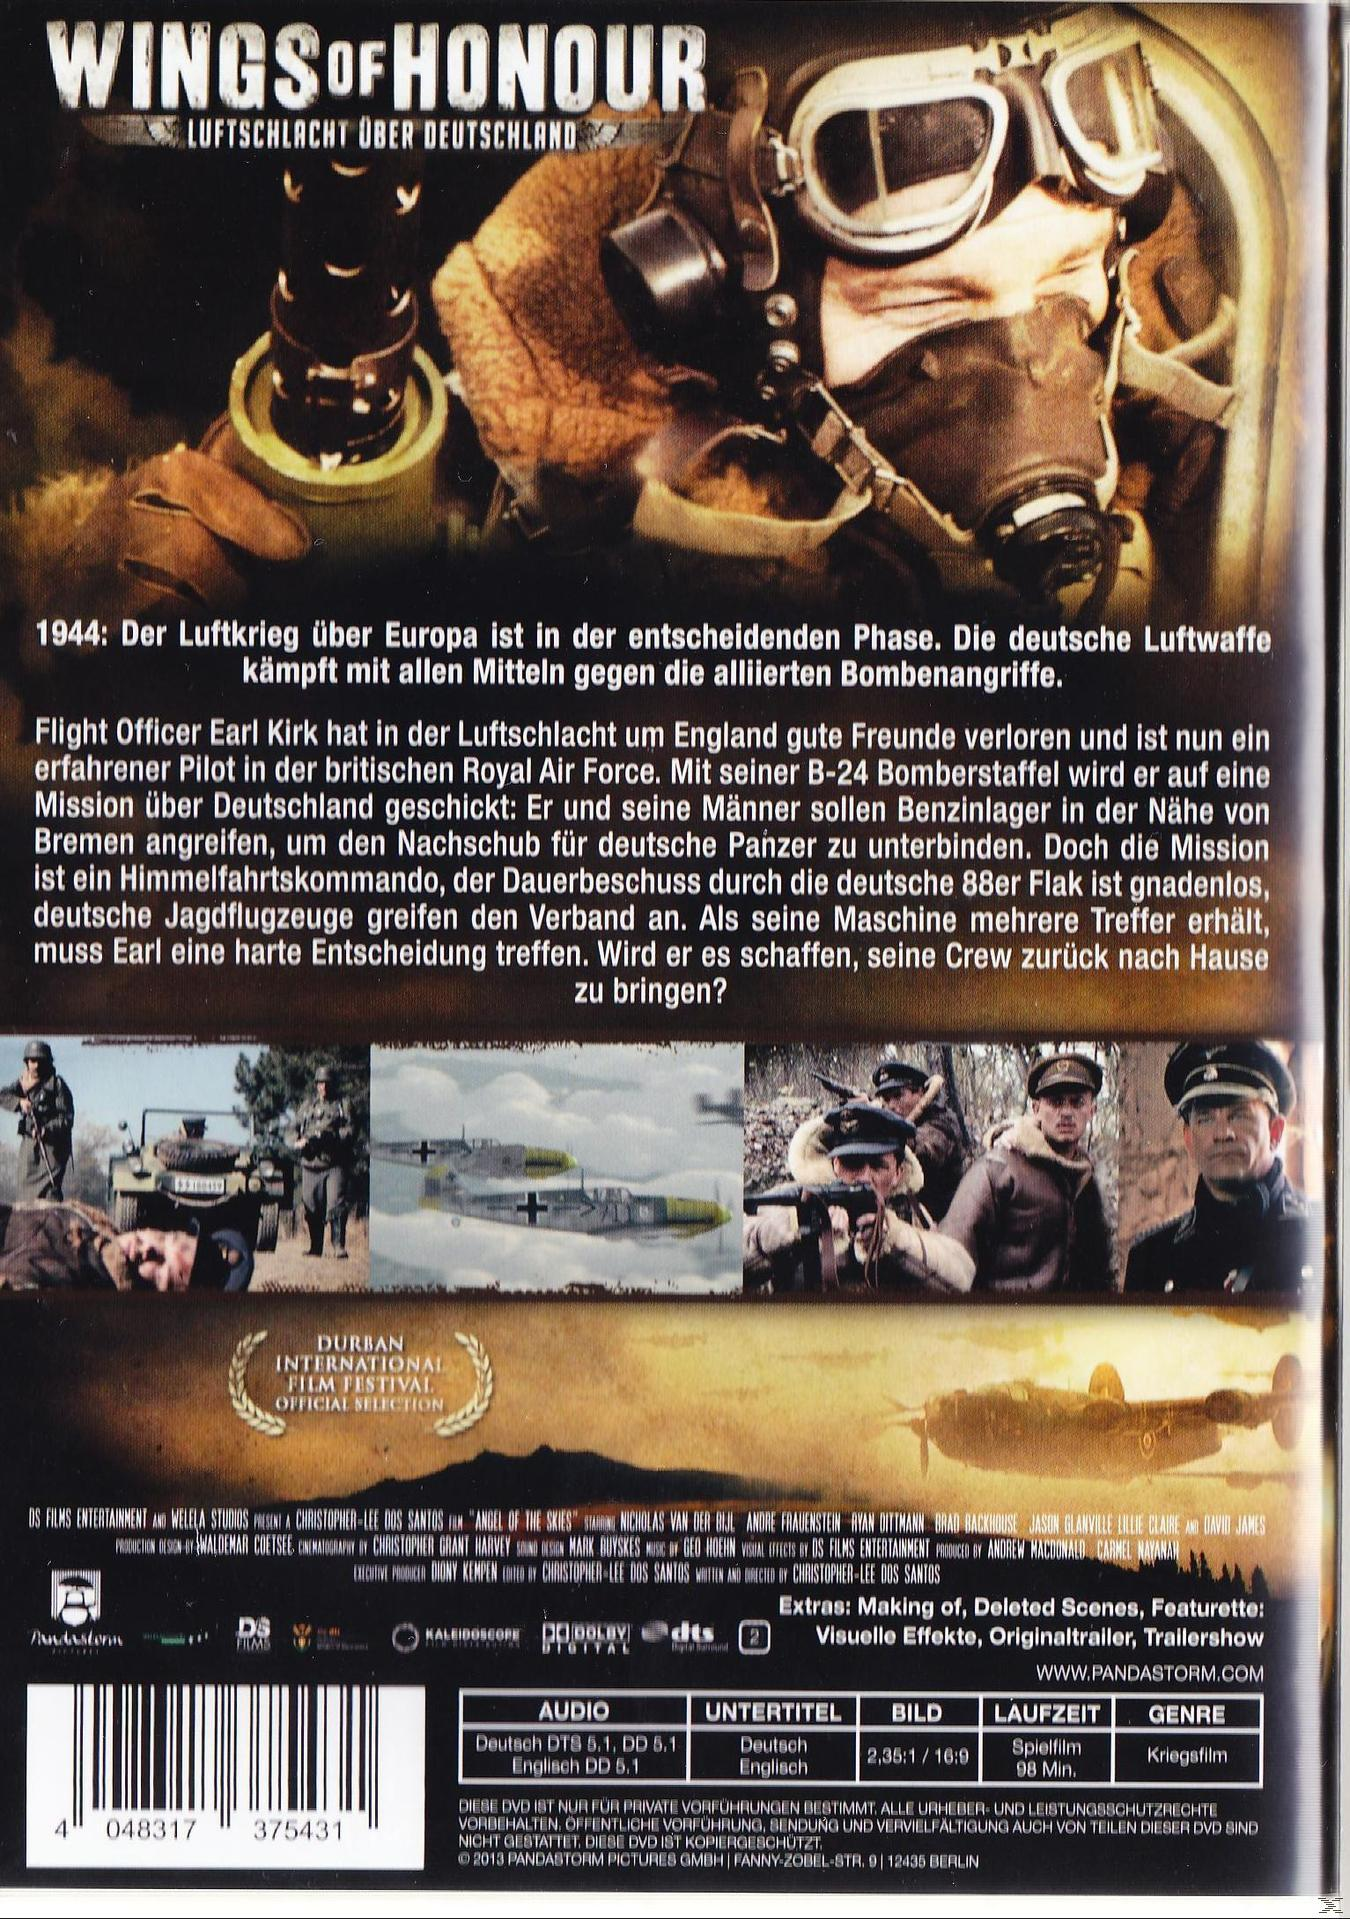 Wings of Honour – DVD über Luftschlacht Deutschland